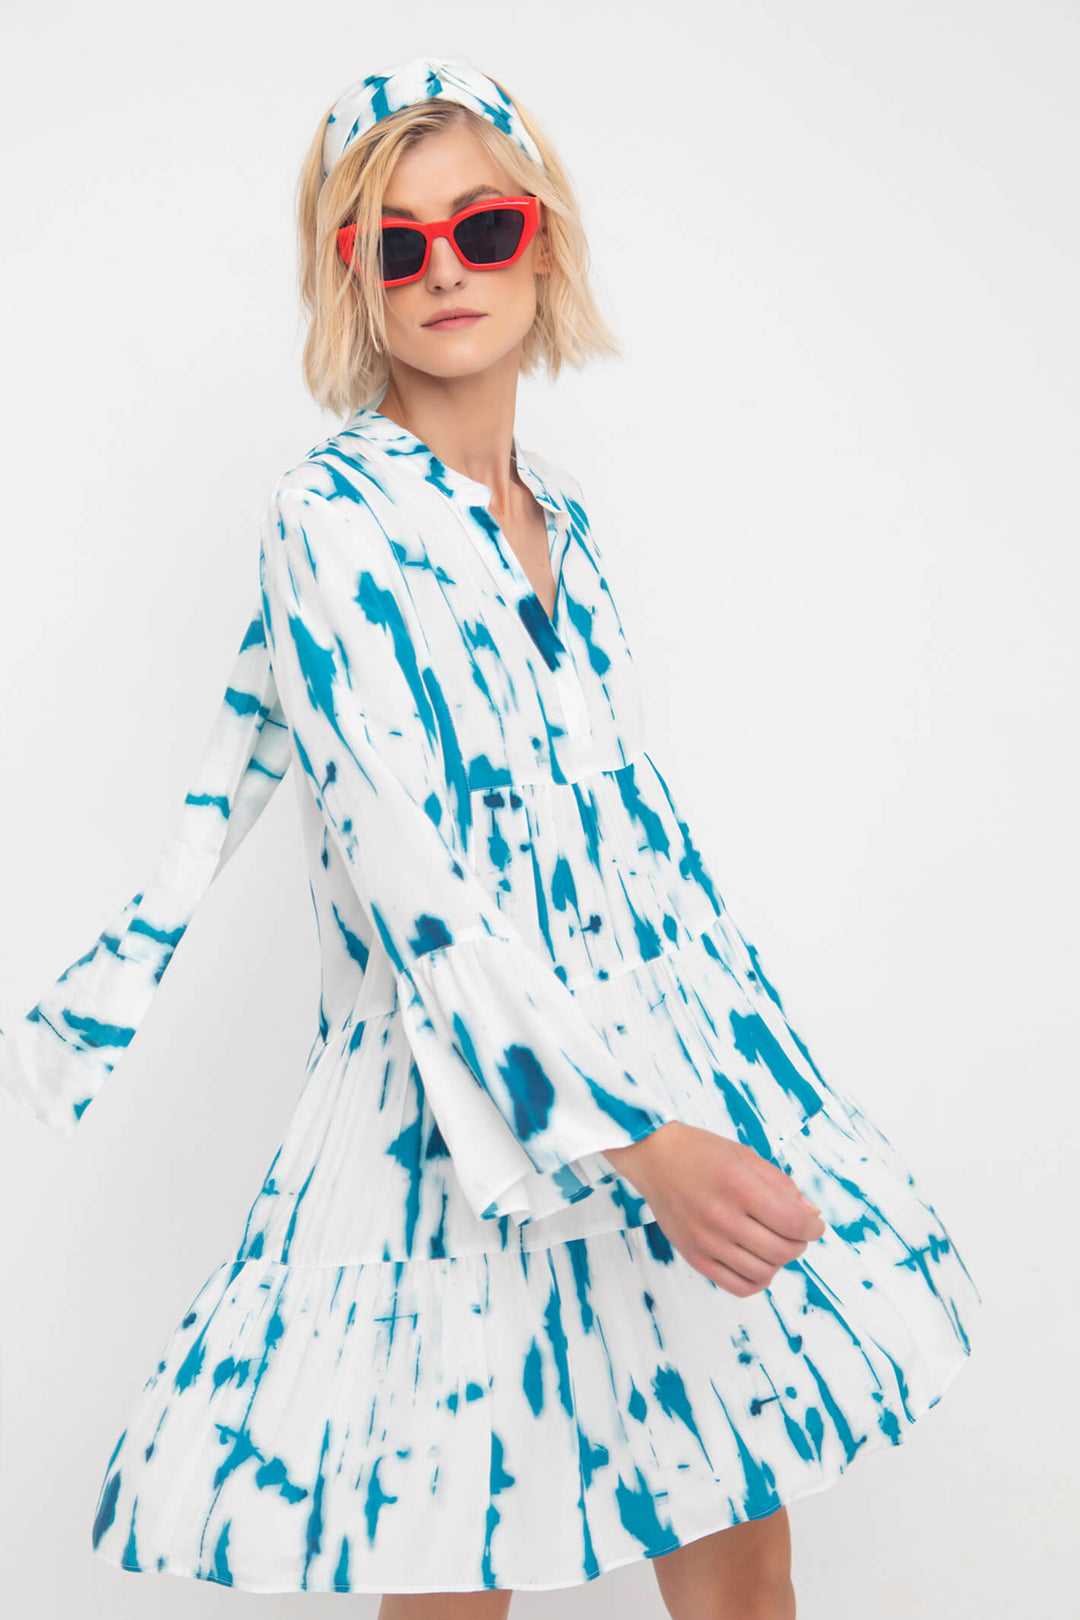 Ozai N Ku 83-3085 Blue Island Print Dress - Experience Boutique